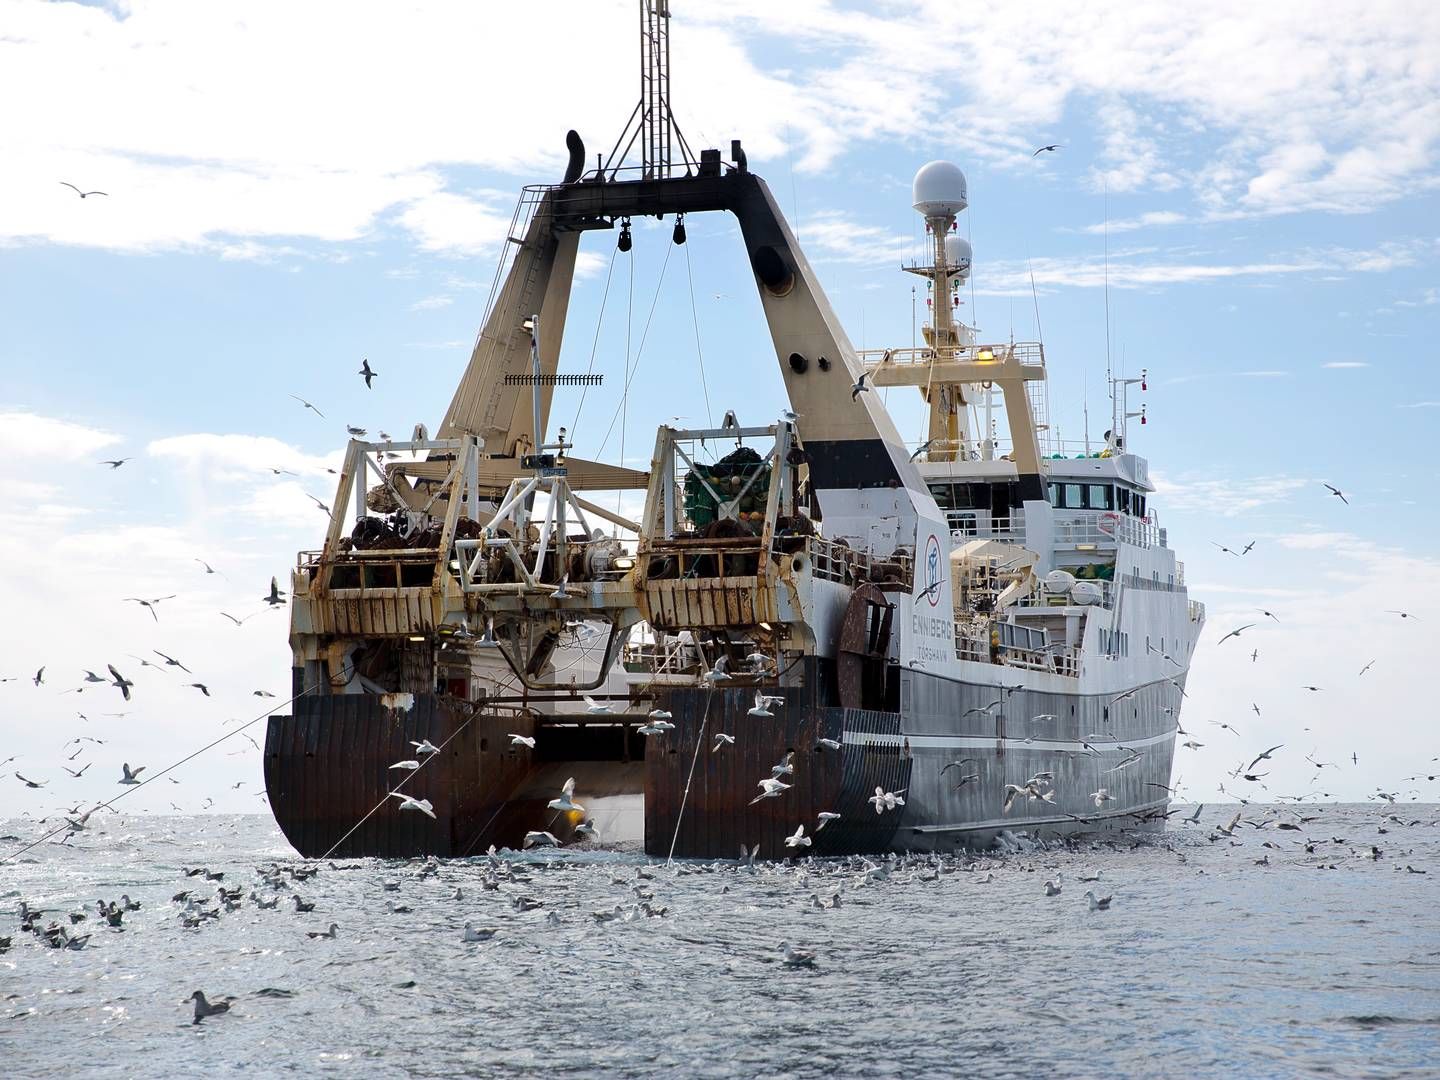 En regnefejl lavet af myndighederne har forårsaget, at store fiskerivirksomheder har fået ekstra kvoter - og flere end de i henhold til kvoteloftet har ret til. | Foto: Per Folkver/Ritzau Scanpix.